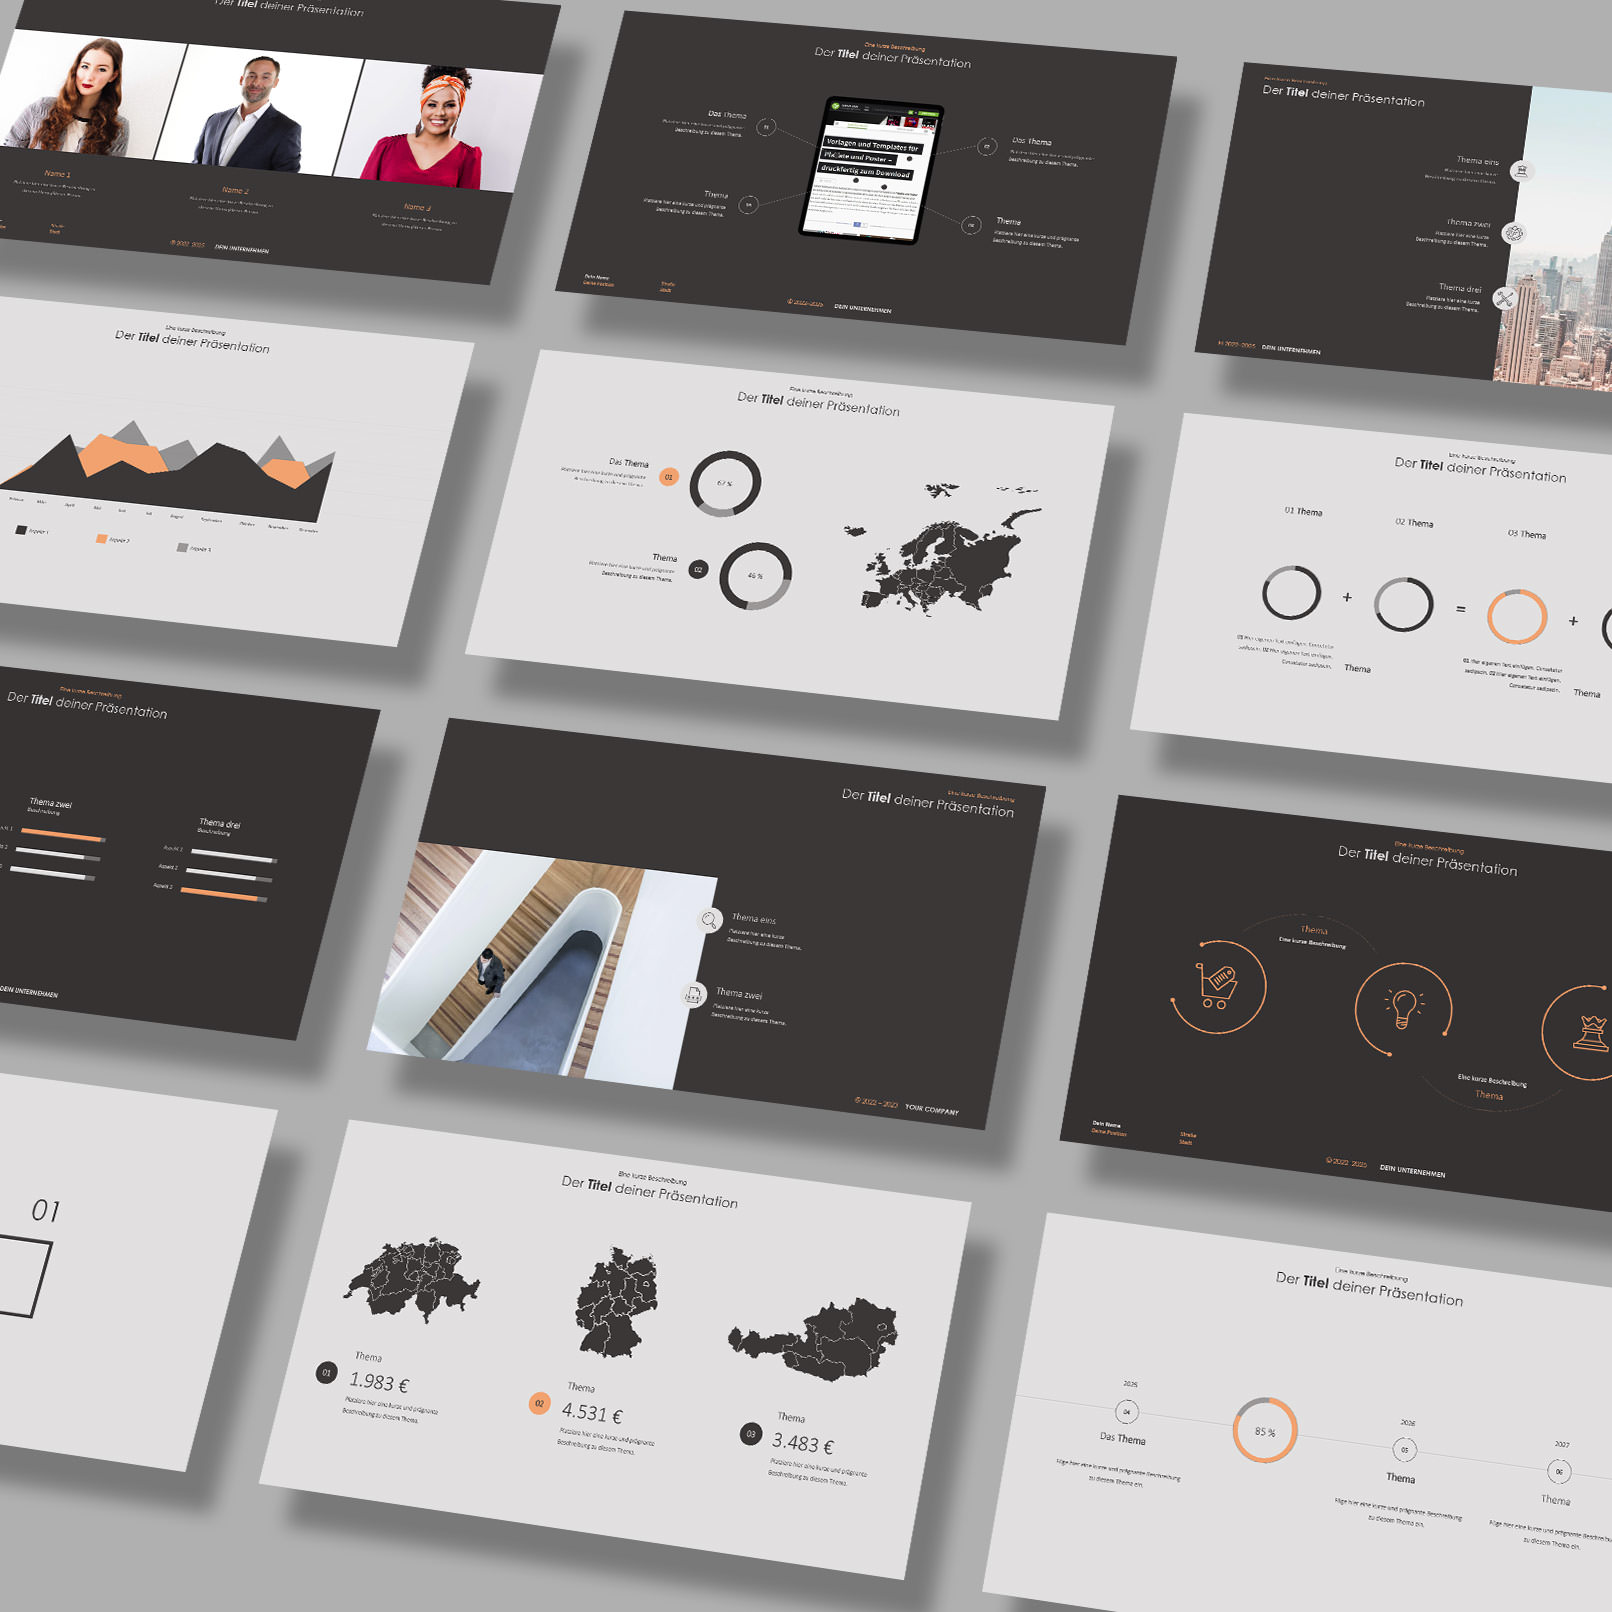 Vorschau auf Layout-Templates im Clean-Design für PowerPoint, Google Slides und Keynote